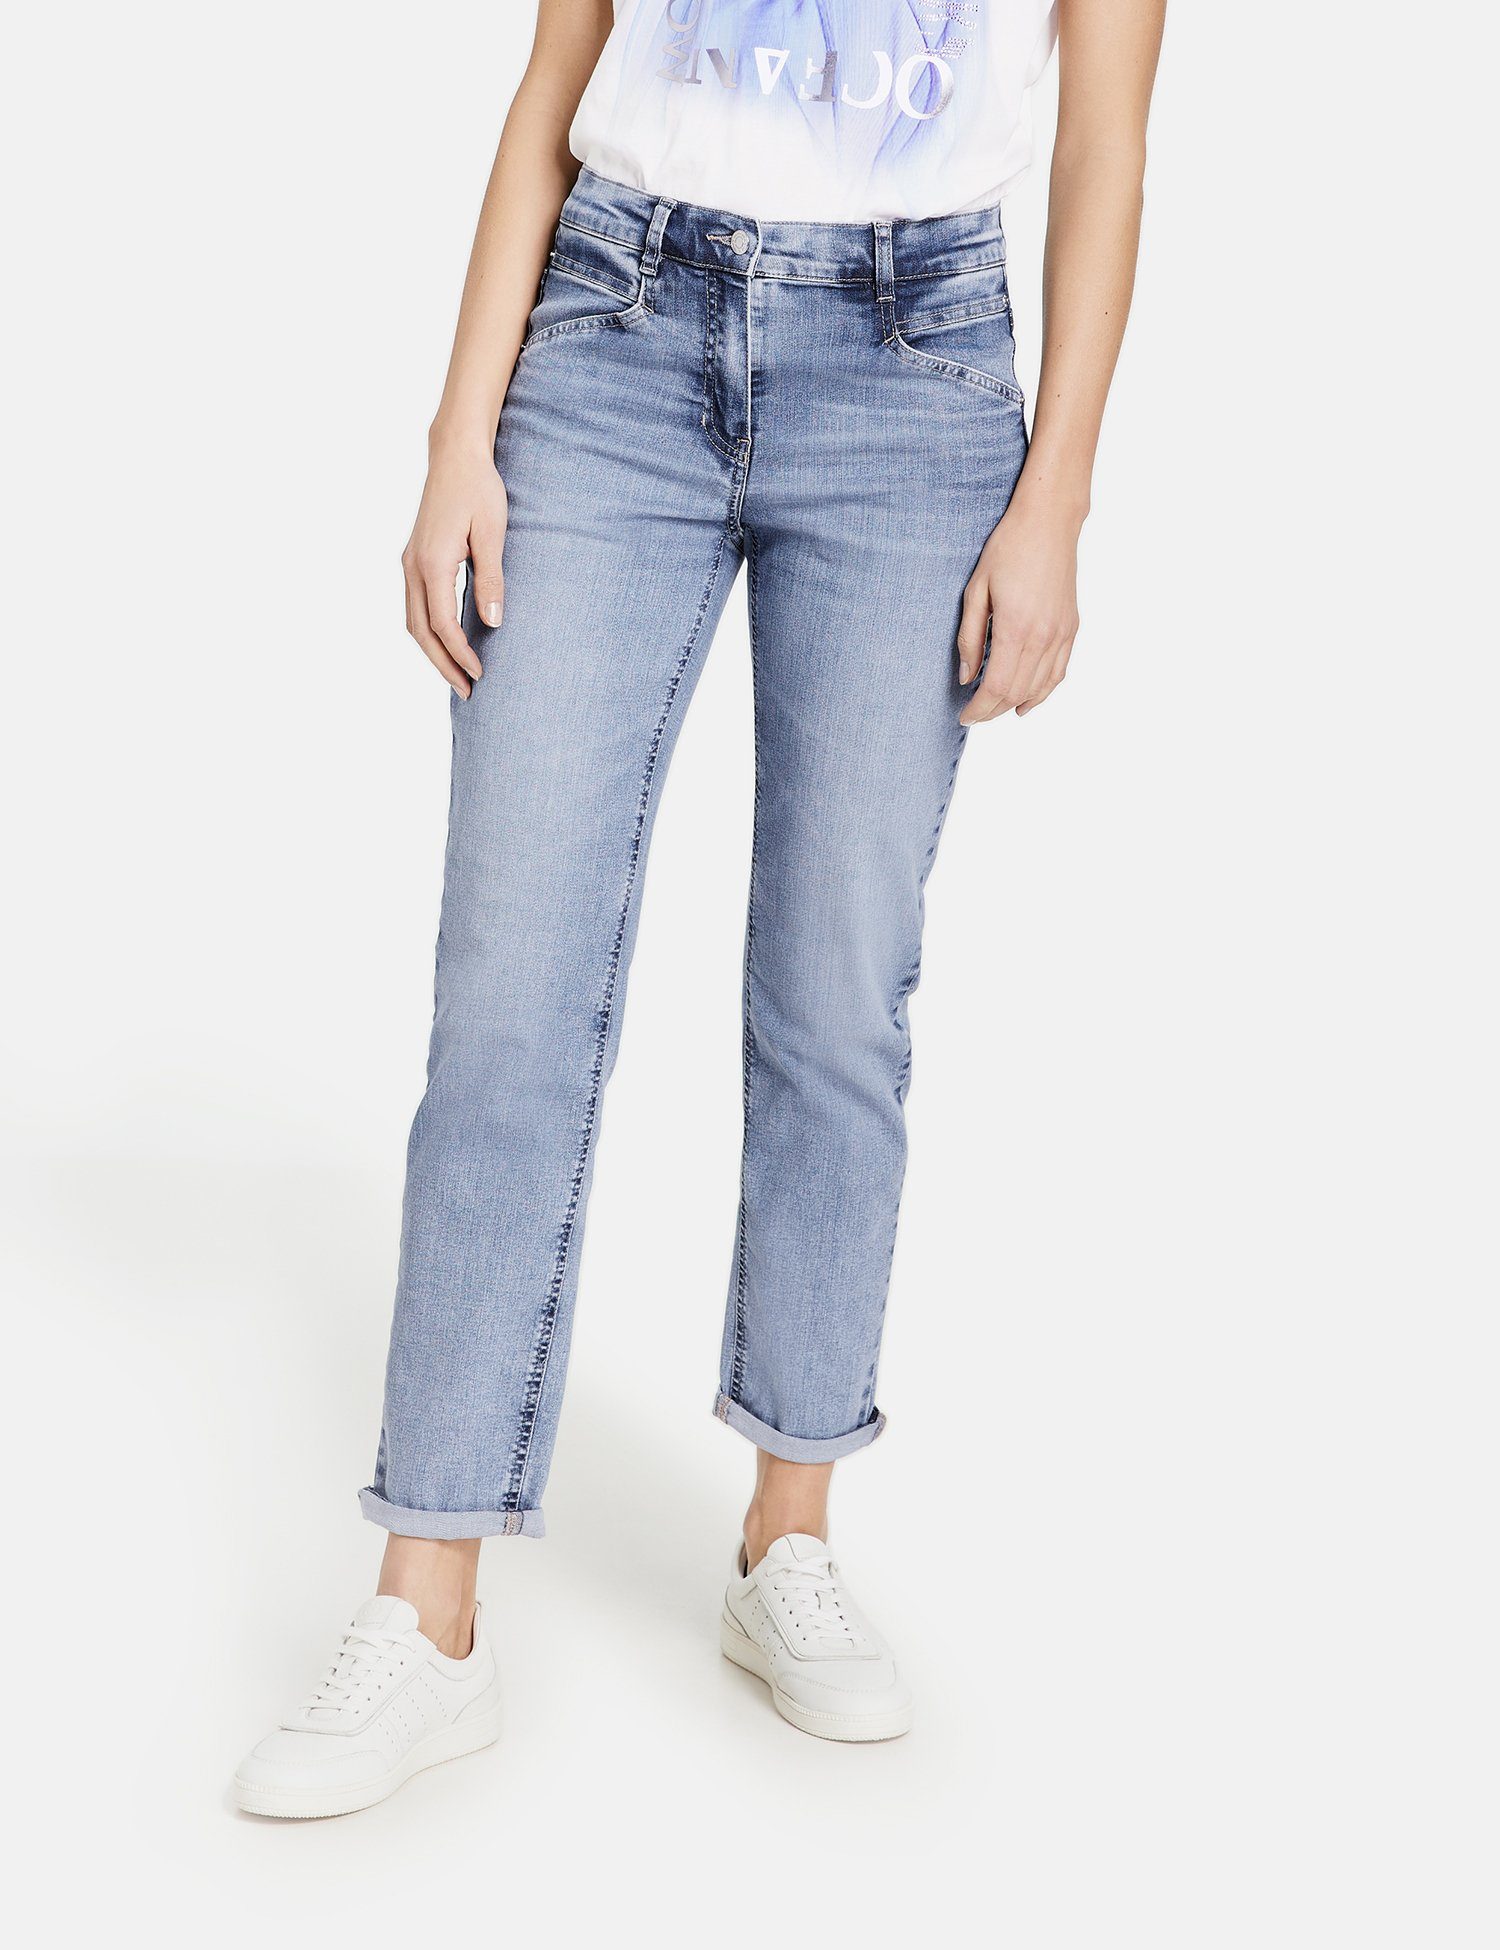 Gerry Weber Damen Jeans online kaufen | OTTO